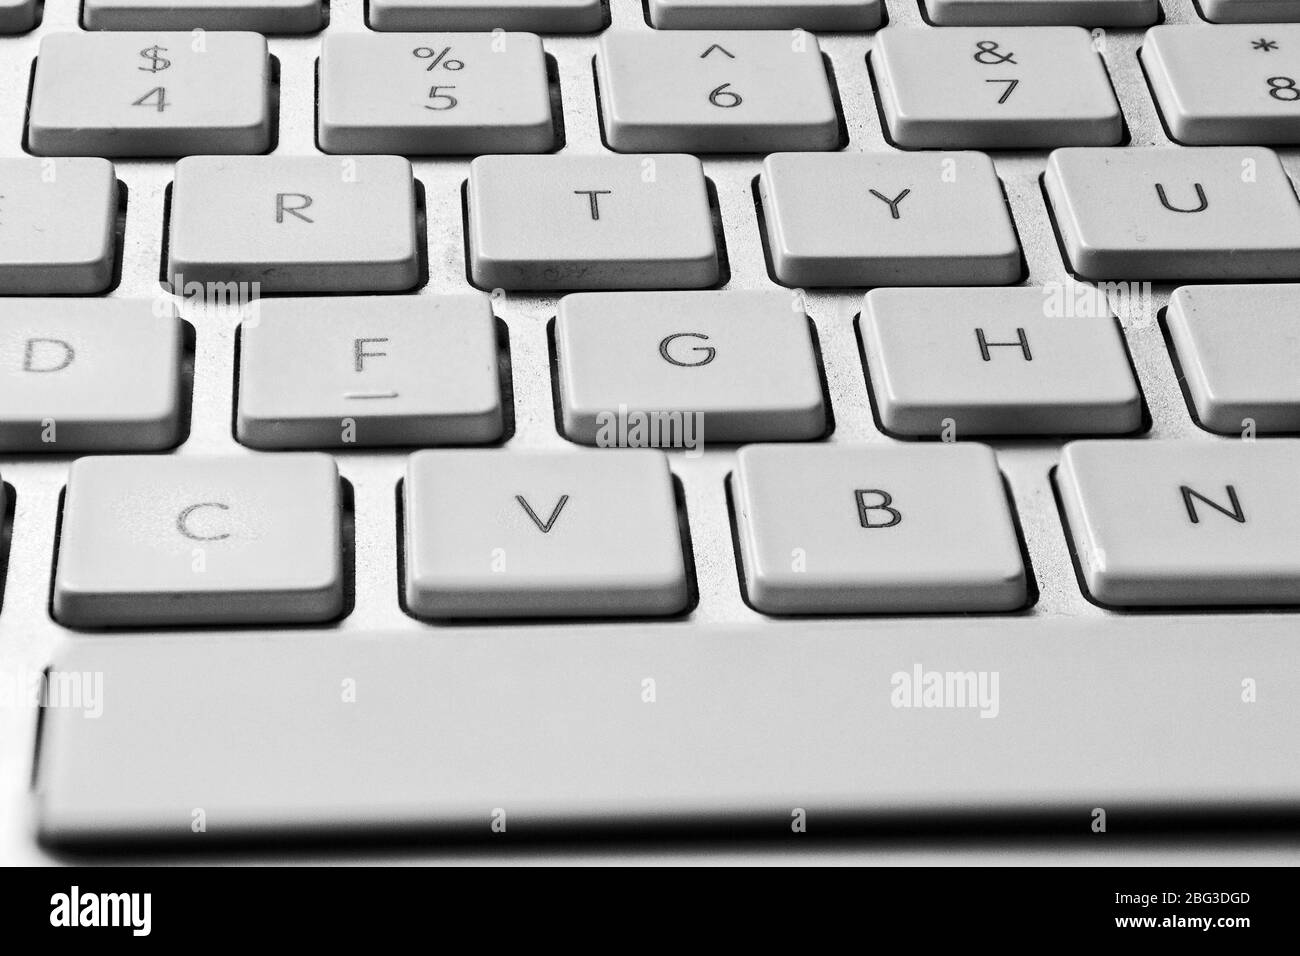 Image rapprochée de la section centrale d'un clavier d'ordinateur couleur argent montrant clairement les touches blanches 4, 5, 6, 7, R, T, y, F, G, H, V, B et N avec A Banque D'Images